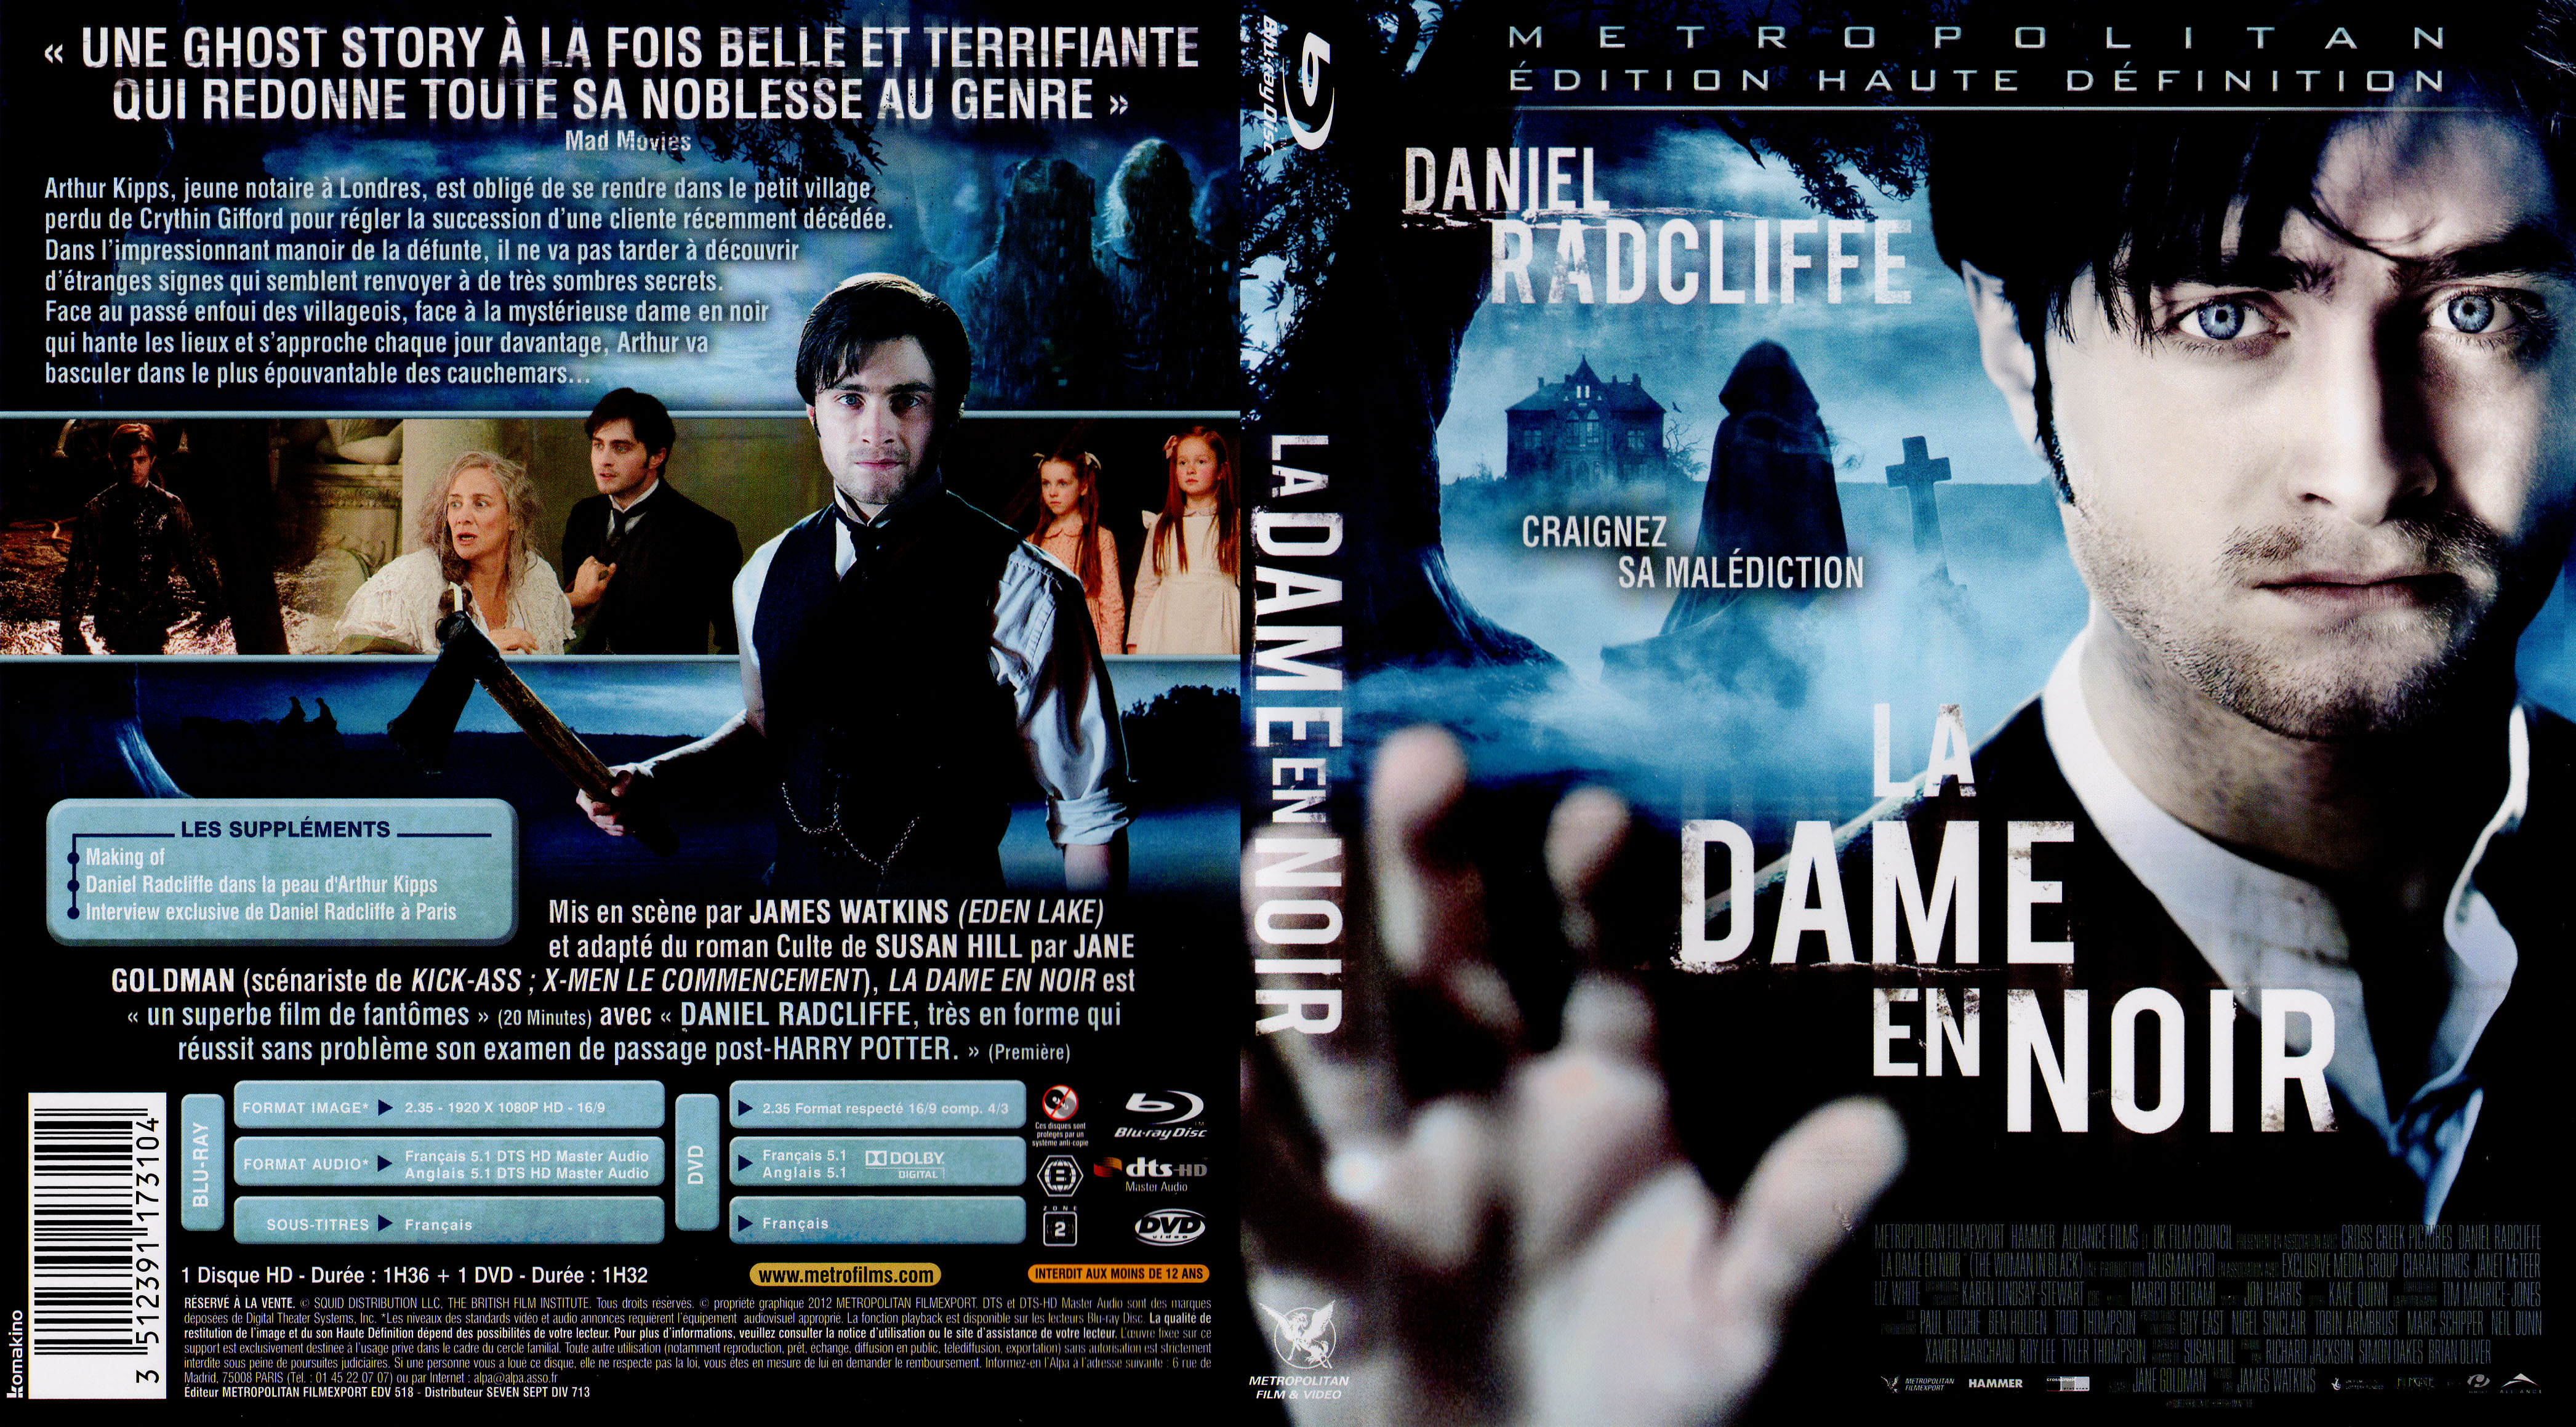 Jaquette DVD La dame en noir (BLU-RAY)